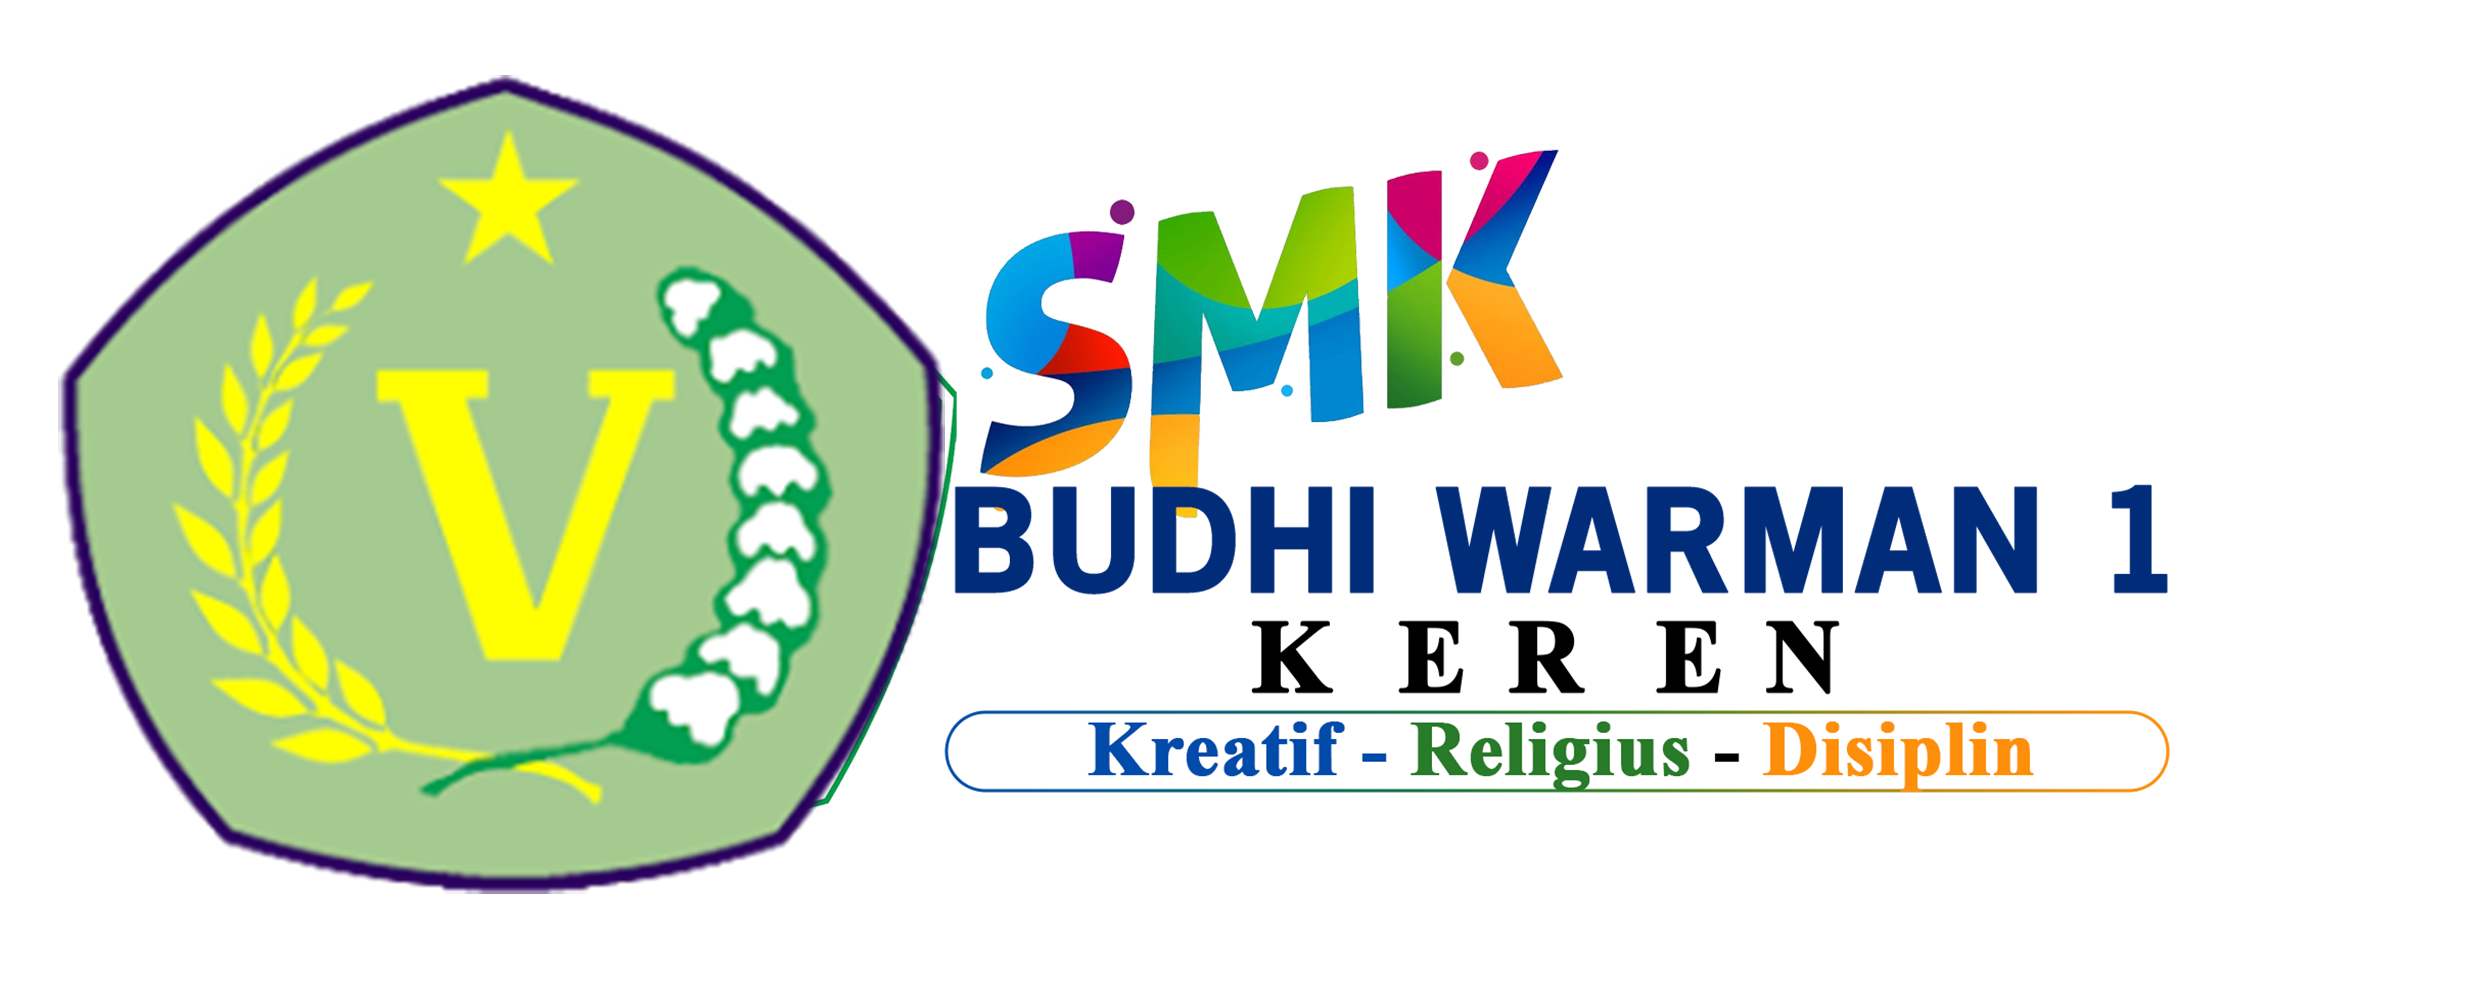 SMK BUDHI WARMAN 1